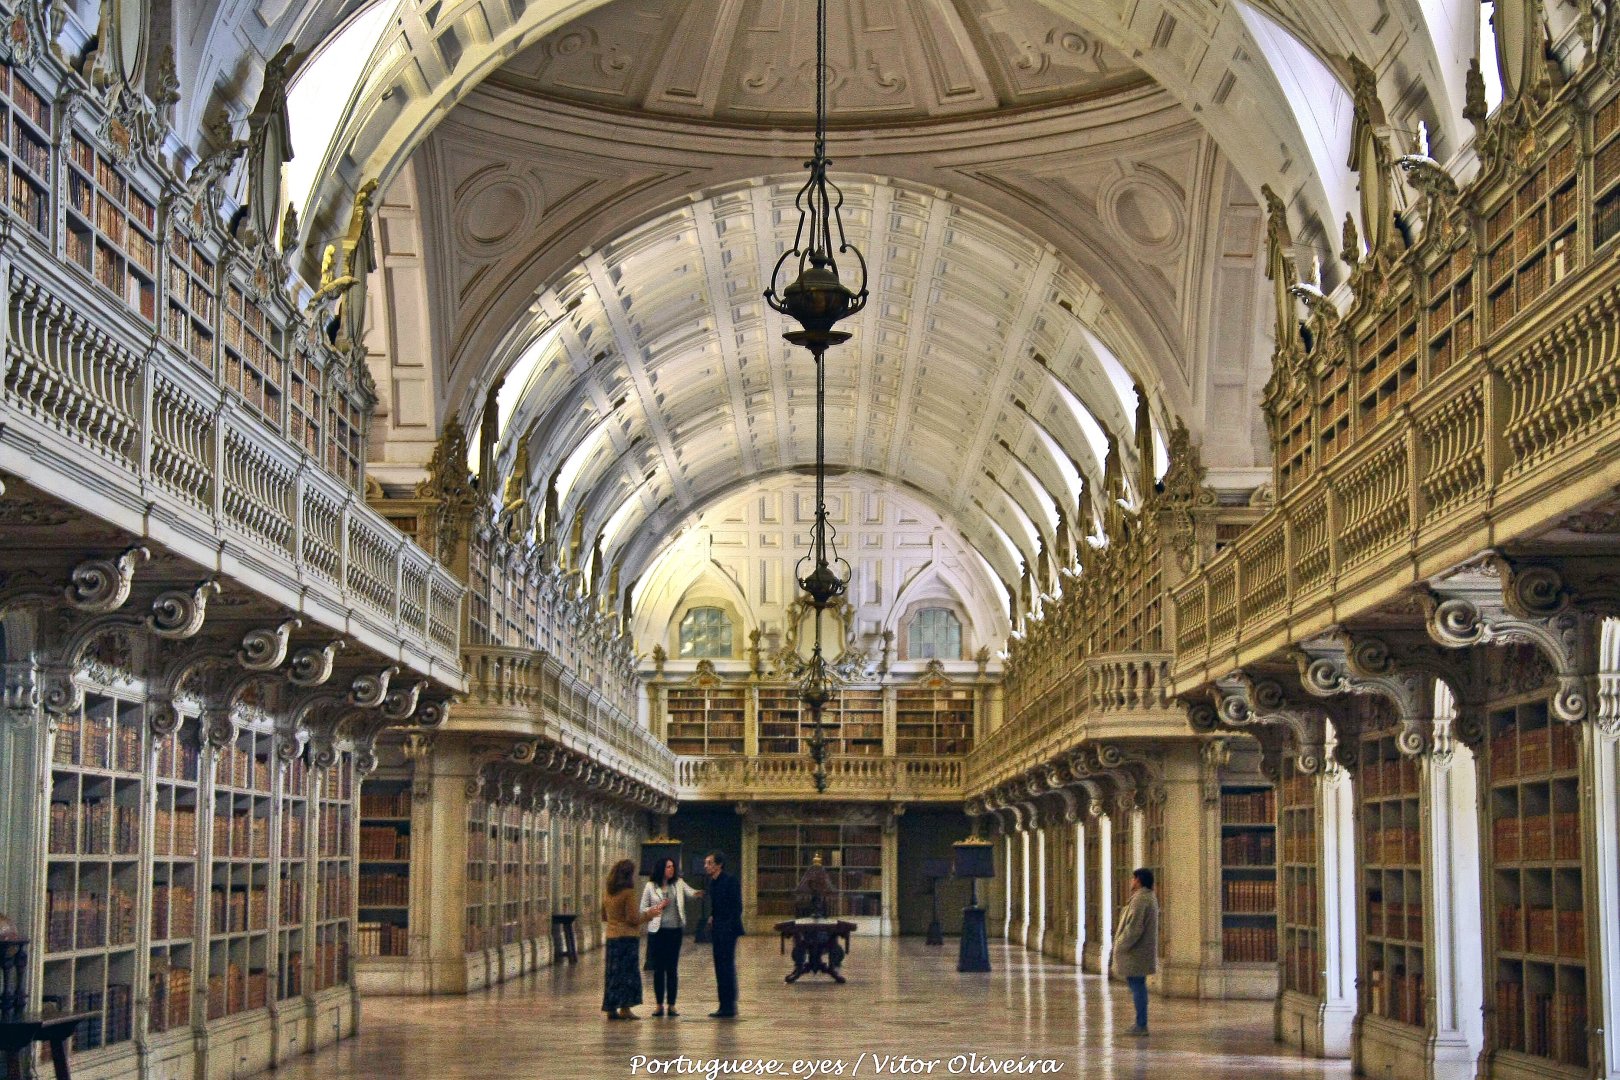 Mafra Palota könyvtára - forrás: wikipedia